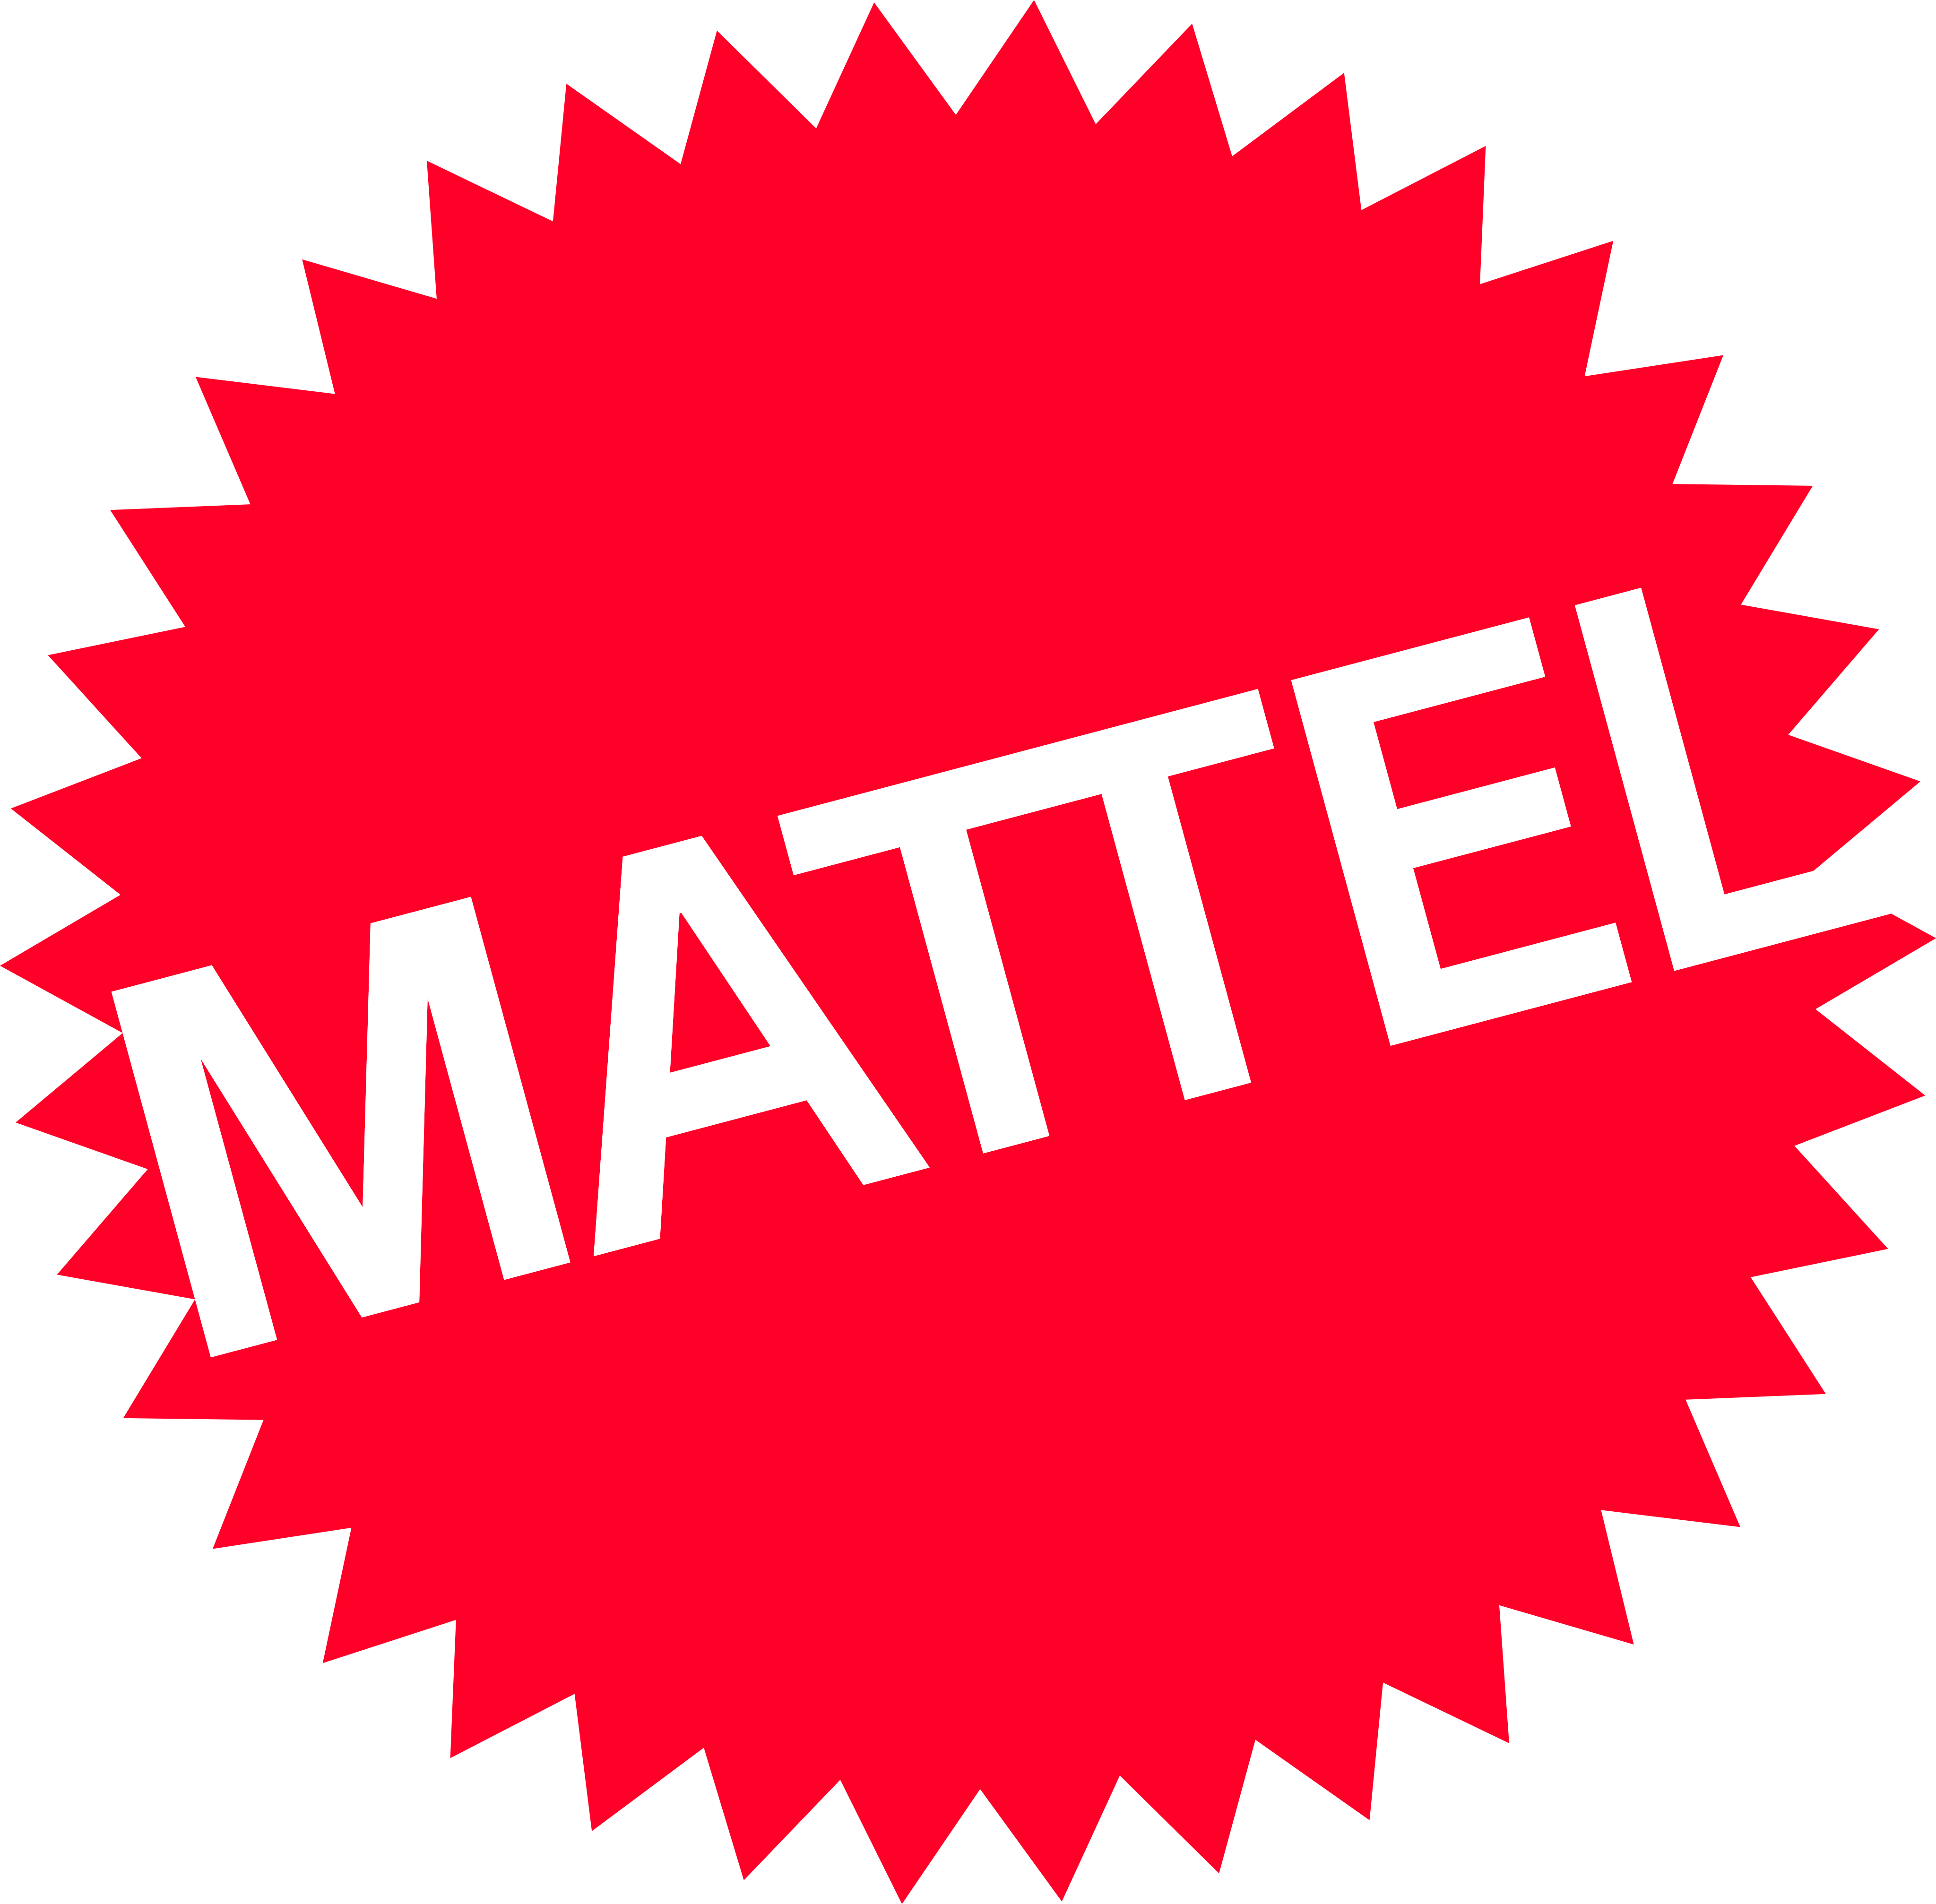 mattel logo 8 - Mattel Logo